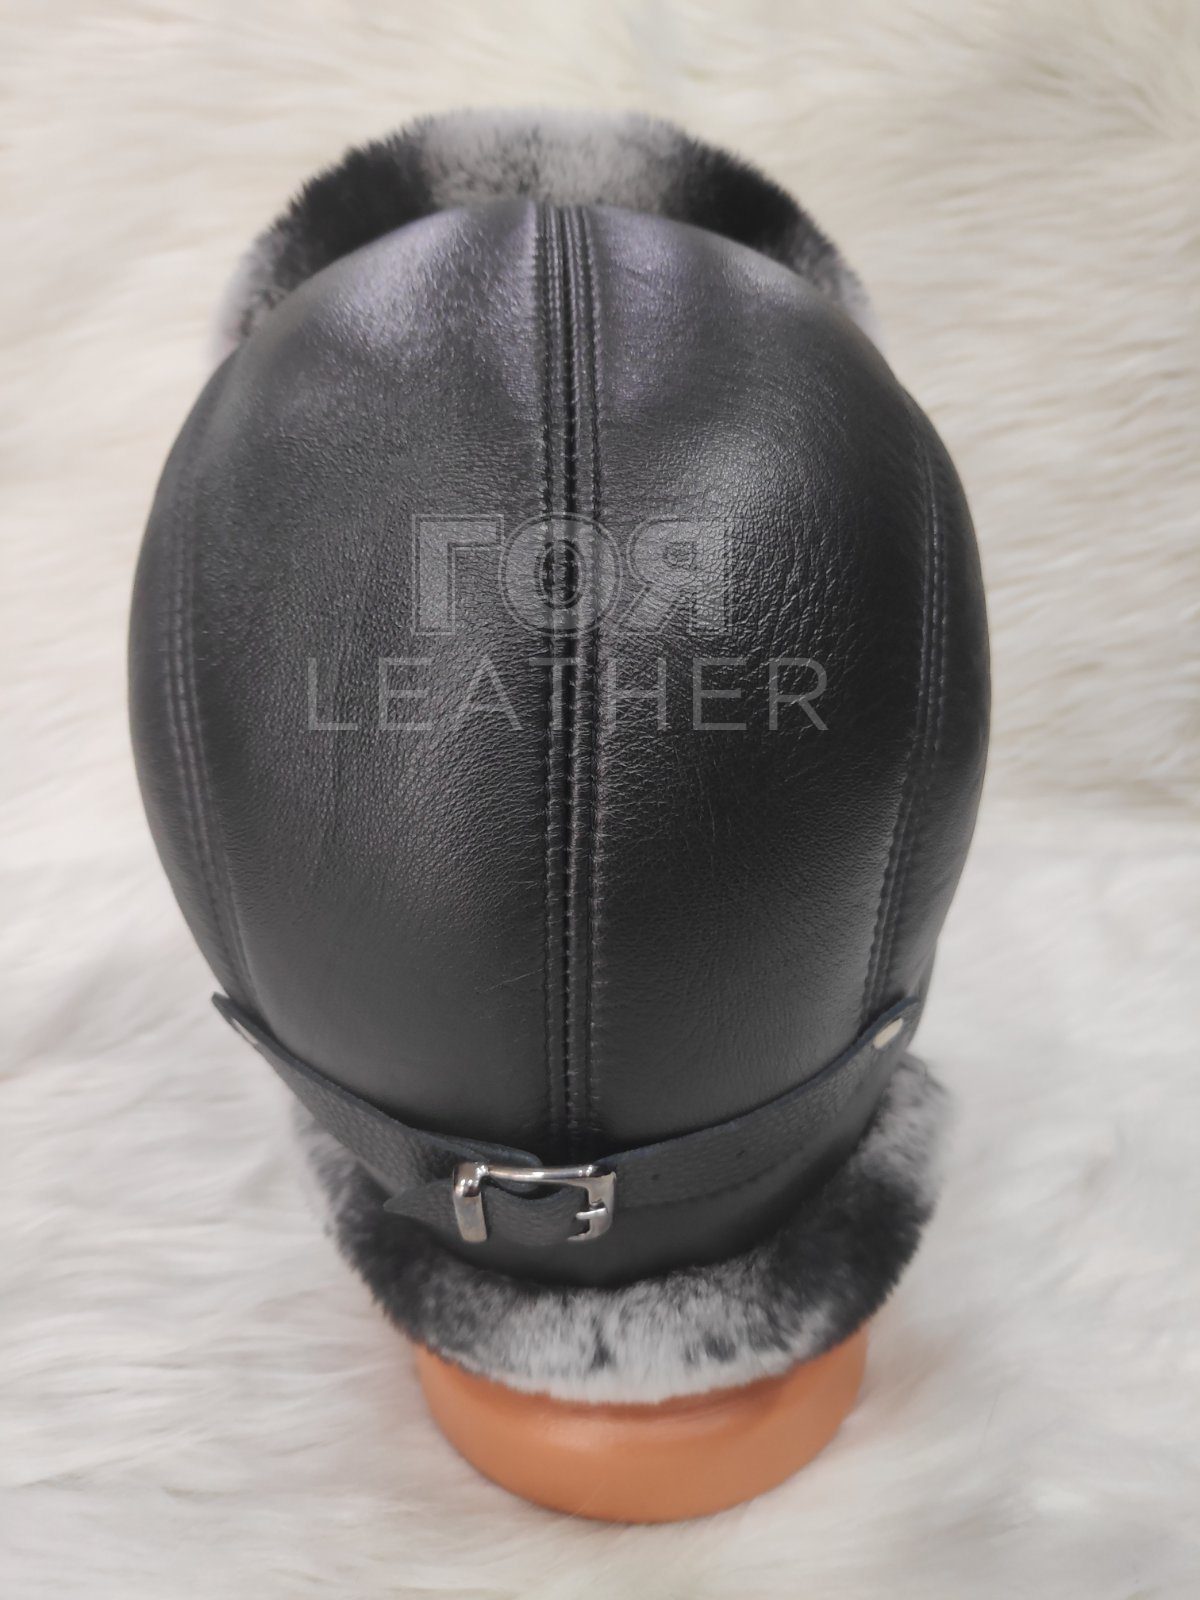 Кожена шапка ушанка от ГОЯ Leather. Шапка изработена от 100% естествена кожа. Използваните естествени материали са агнешка напа и рекс-чинчила. Лек, топъл и комфортен модел. Шапката е унисекс.